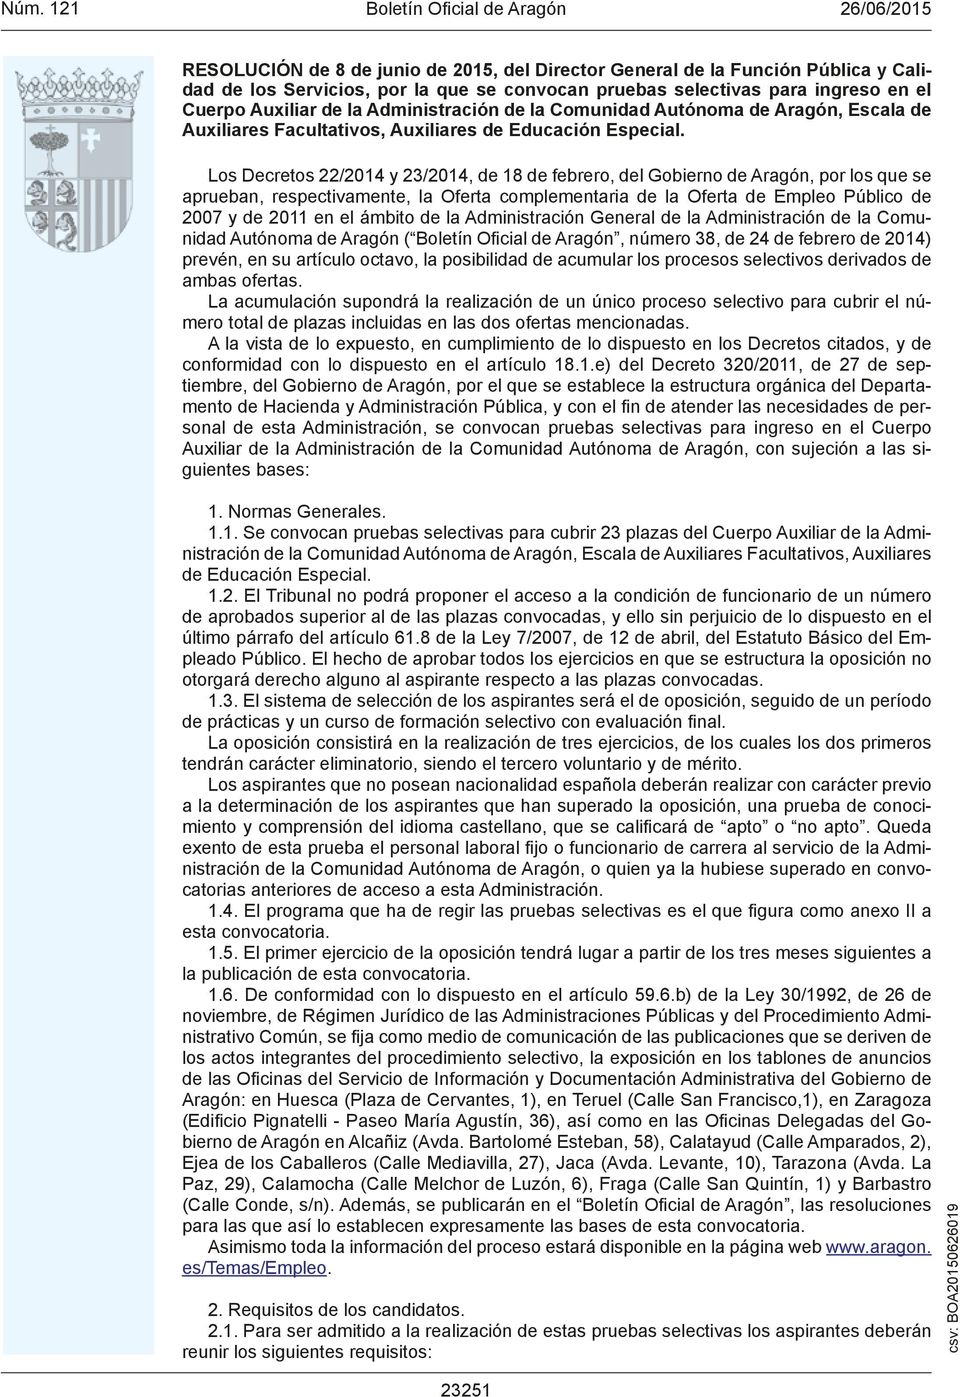 Los Decretos 22/2014 y 23/2014, de 18 de febrero, del Gobierno de Aragón, por los que se aprueban, respectivamente, la Oferta complementaria de la Oferta de Empleo Público de 2007 y de 2011 en el